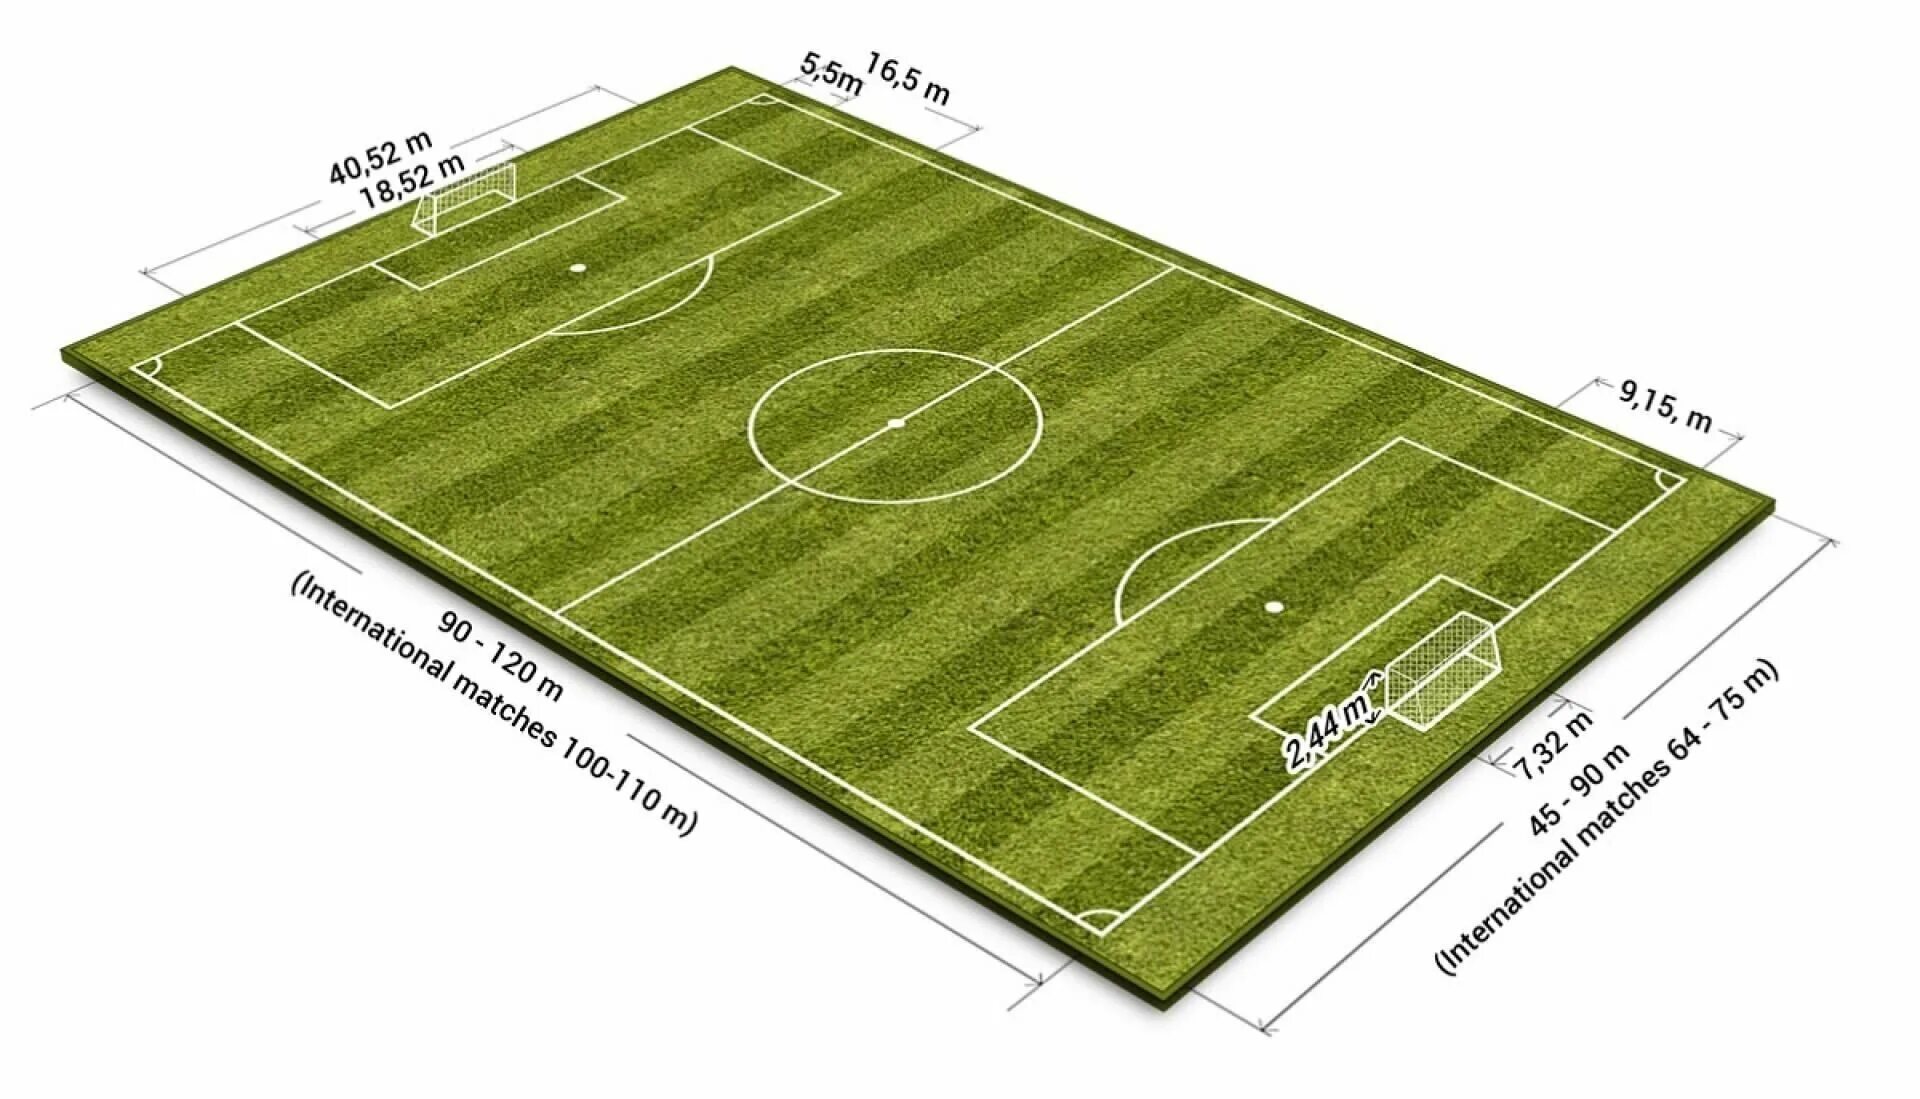 Стандартные размеры футбольного. Площадь футбольного поля м2 стандарт. Разметка футбольного поля 68х105. Стандарт футбольного поля ФИФА. Размер футбольного поля в метрах стандарт.